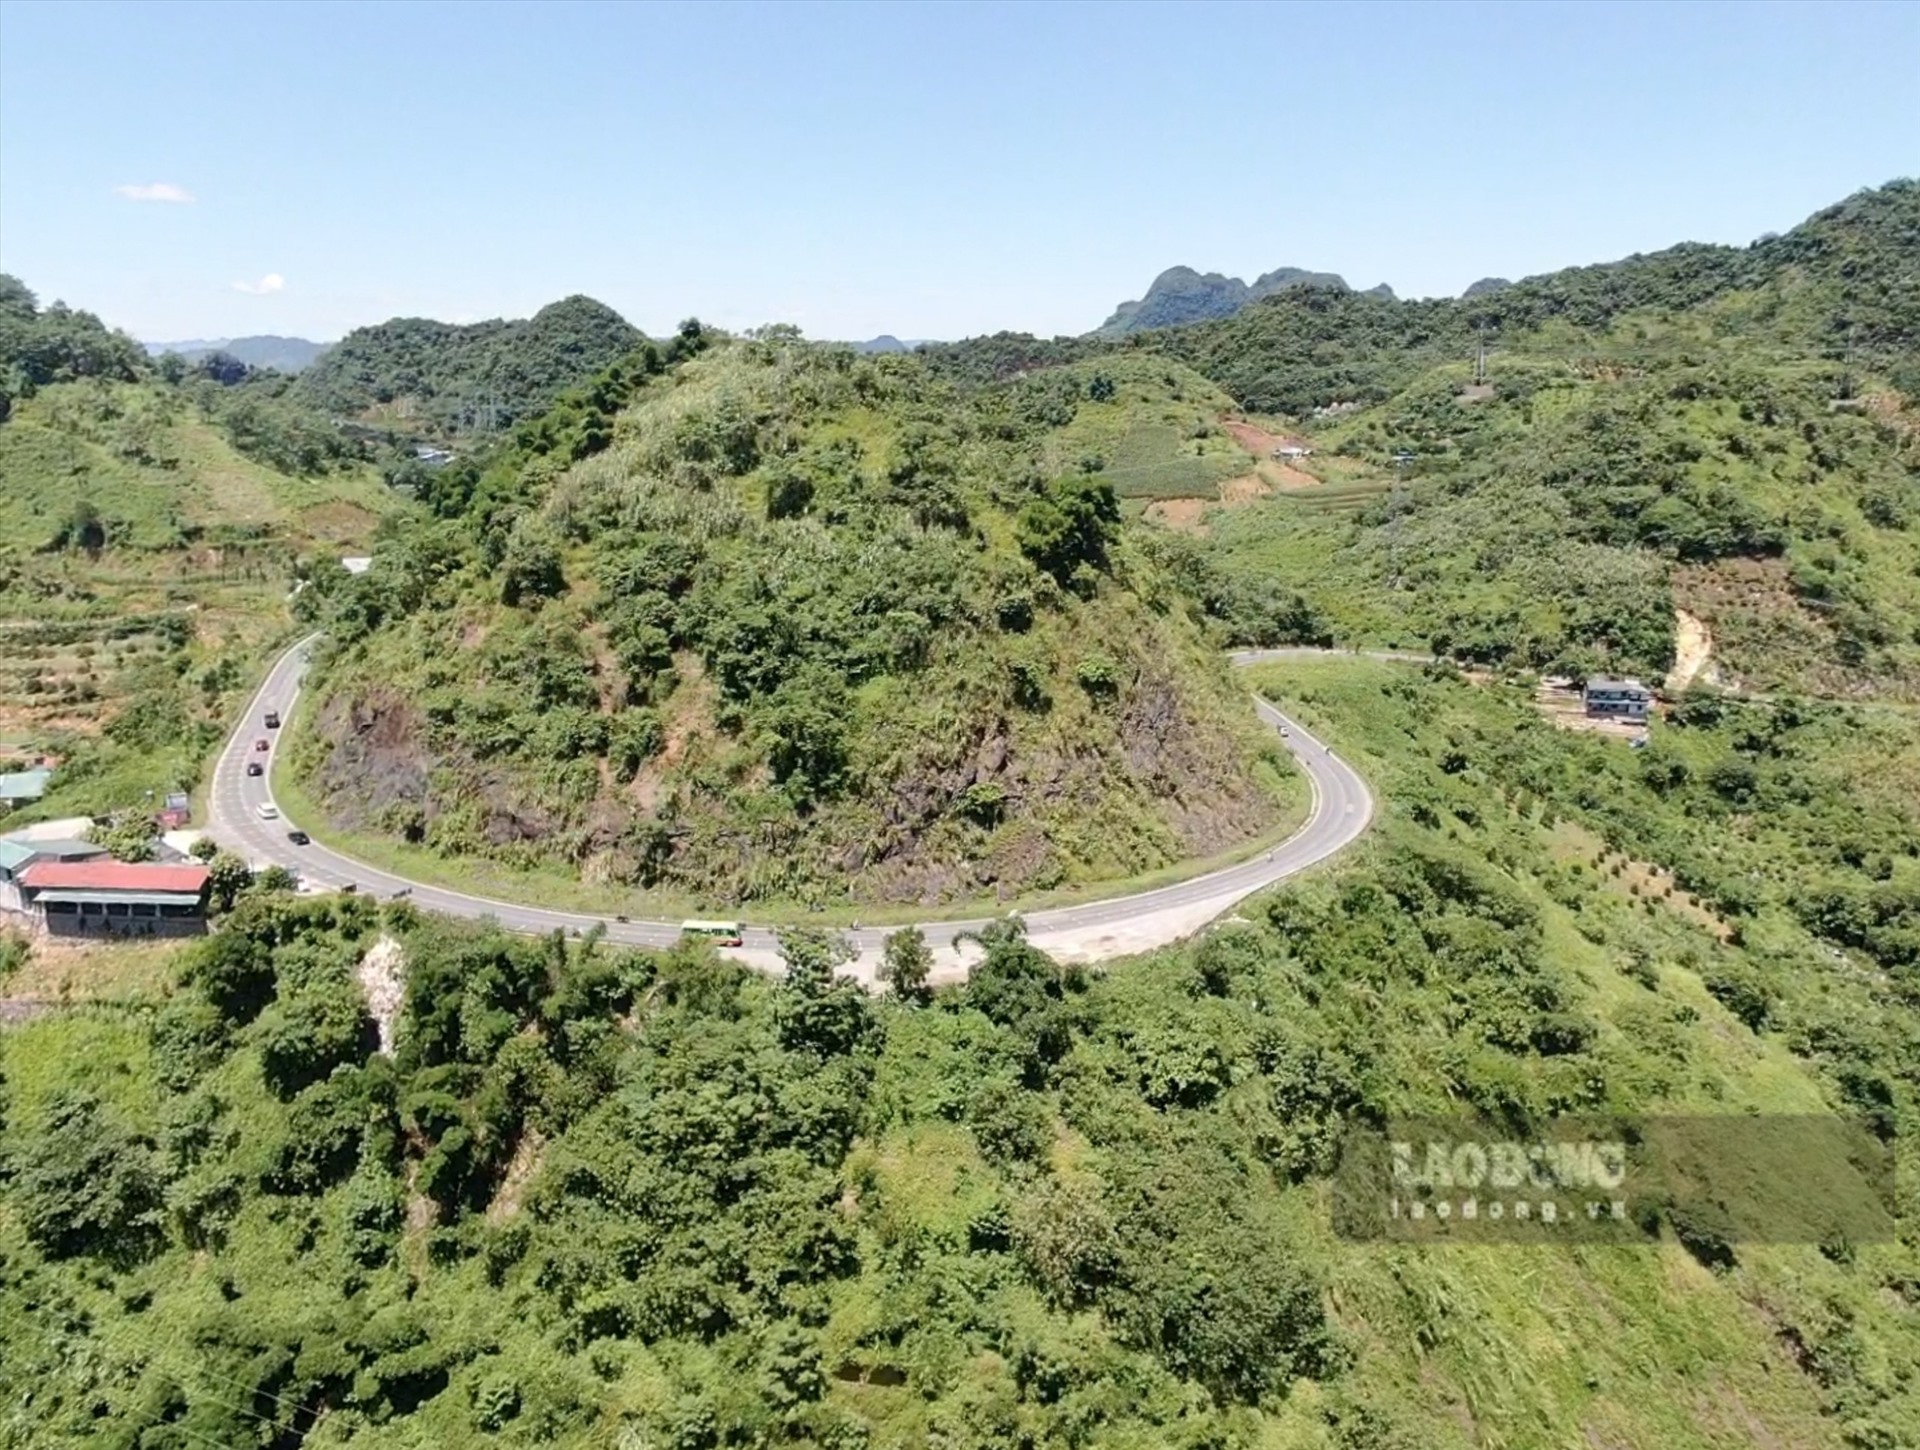 Quốc lộ 6 là tuyến đường huyết mạch nối Hà Nội với các tỉnh Tây Bắc, mỗi ngày có hàng nghìn lượt phương tiện tham gia giao thông. Trong đó, vị trí nguy hiểm thường xuyên xảy ra tai nạn là đoạn tuyến Dốc Cun qua TP.Hòa Bình (tỉnh Hòa Bình) dài gần 5km, từ Km 78+300 đến Km82+00.